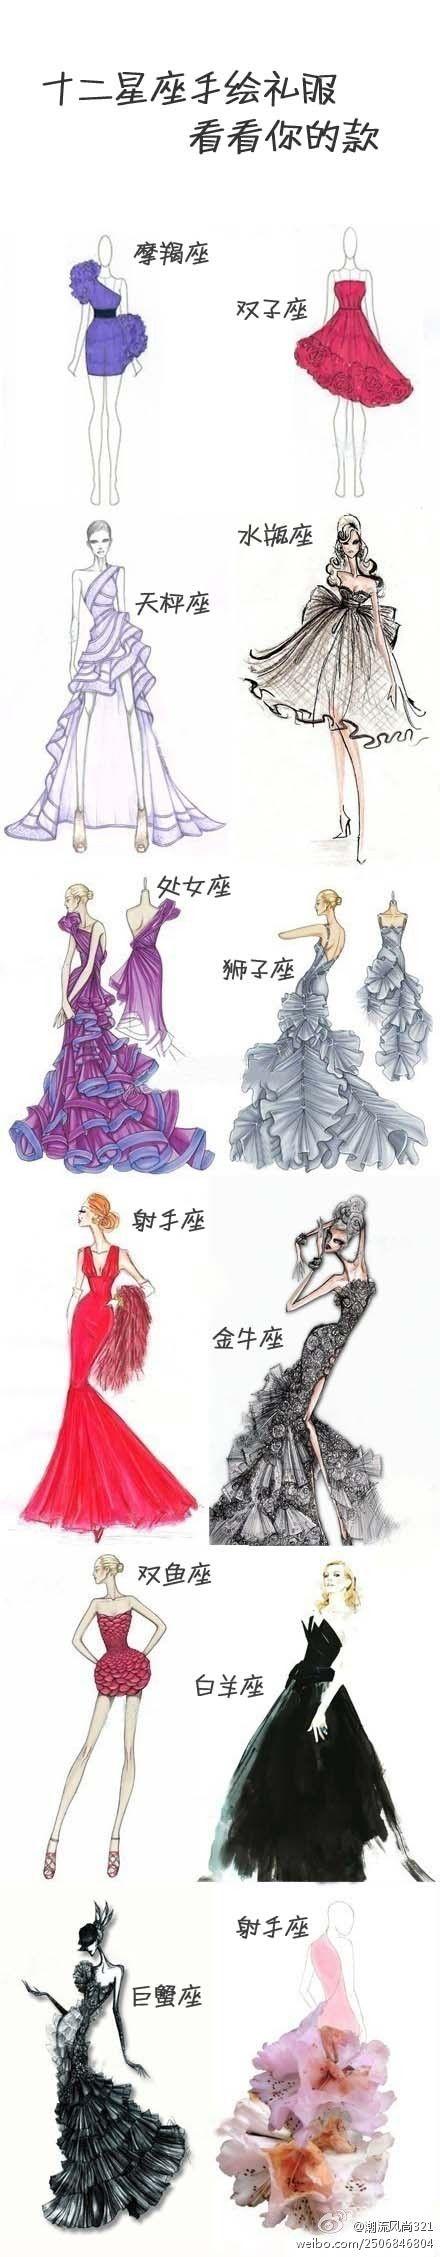 十二星座#手绘礼服,哪个是你的款 好喜欢